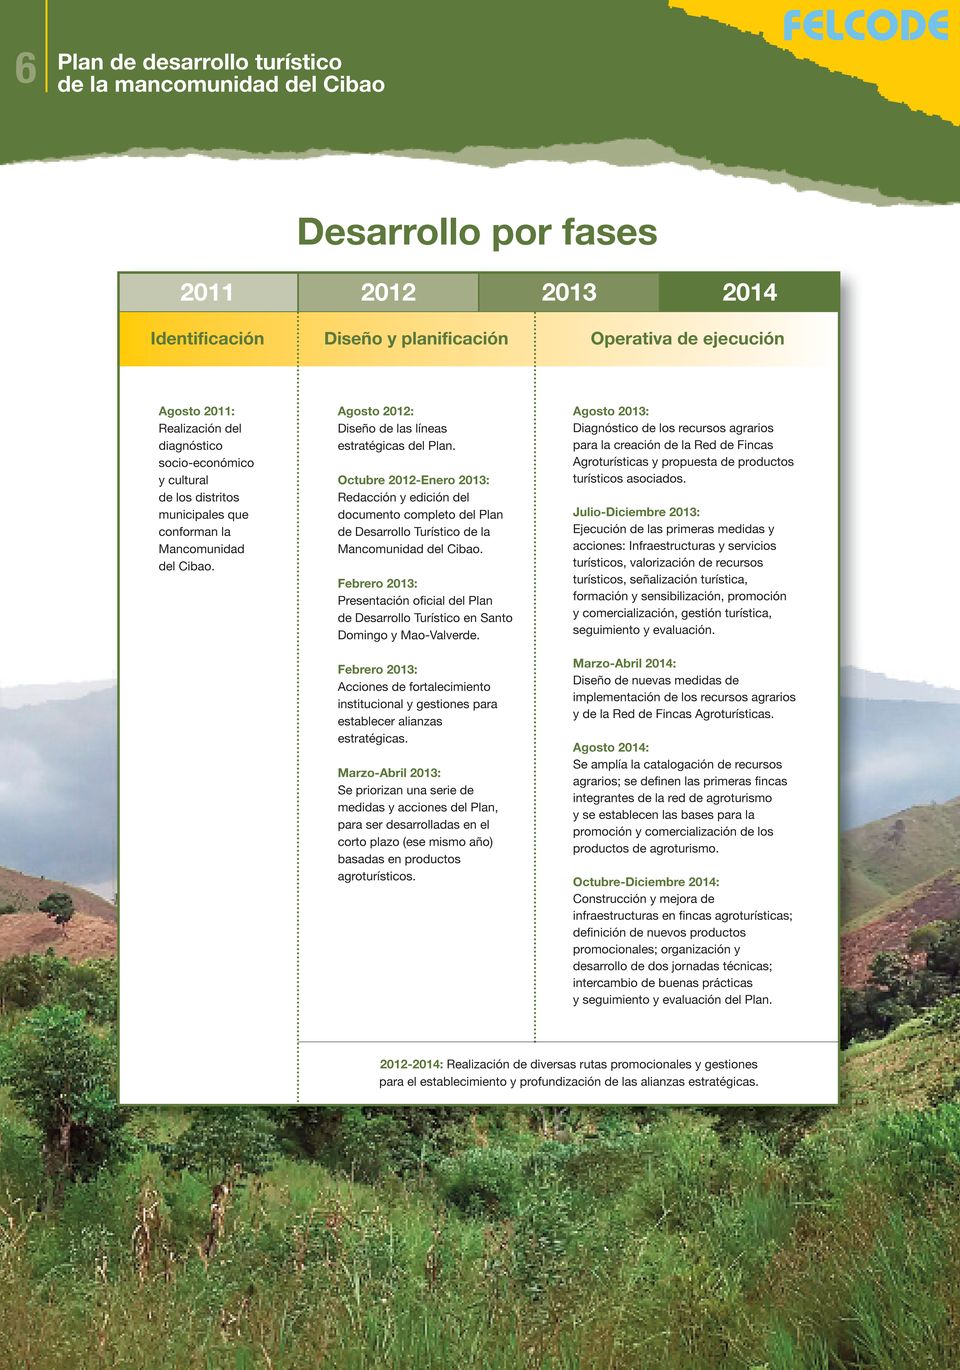 Octubre 2012-Enero 2013: Redacción y edición del documento completo del Plan de Desarrollo Turístico de la Mancomunidad del Cibao.